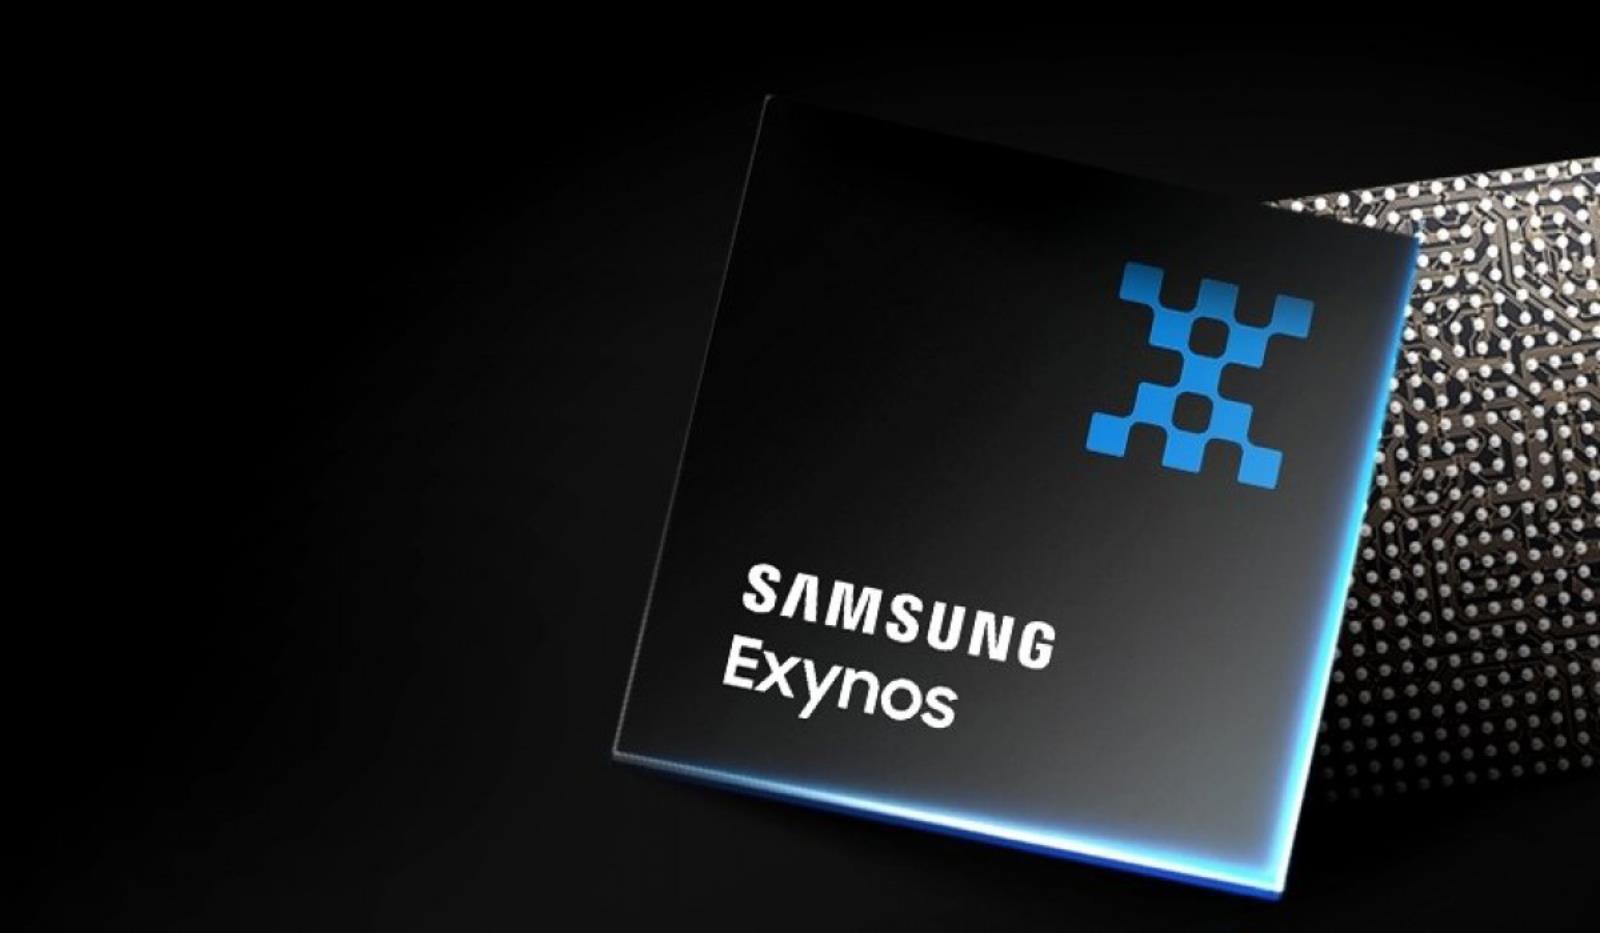 Samsung, Procesory graficzne AMD w średniakach Samsunga, Exynosy z mRDNA mogą obrać nowe oblicze